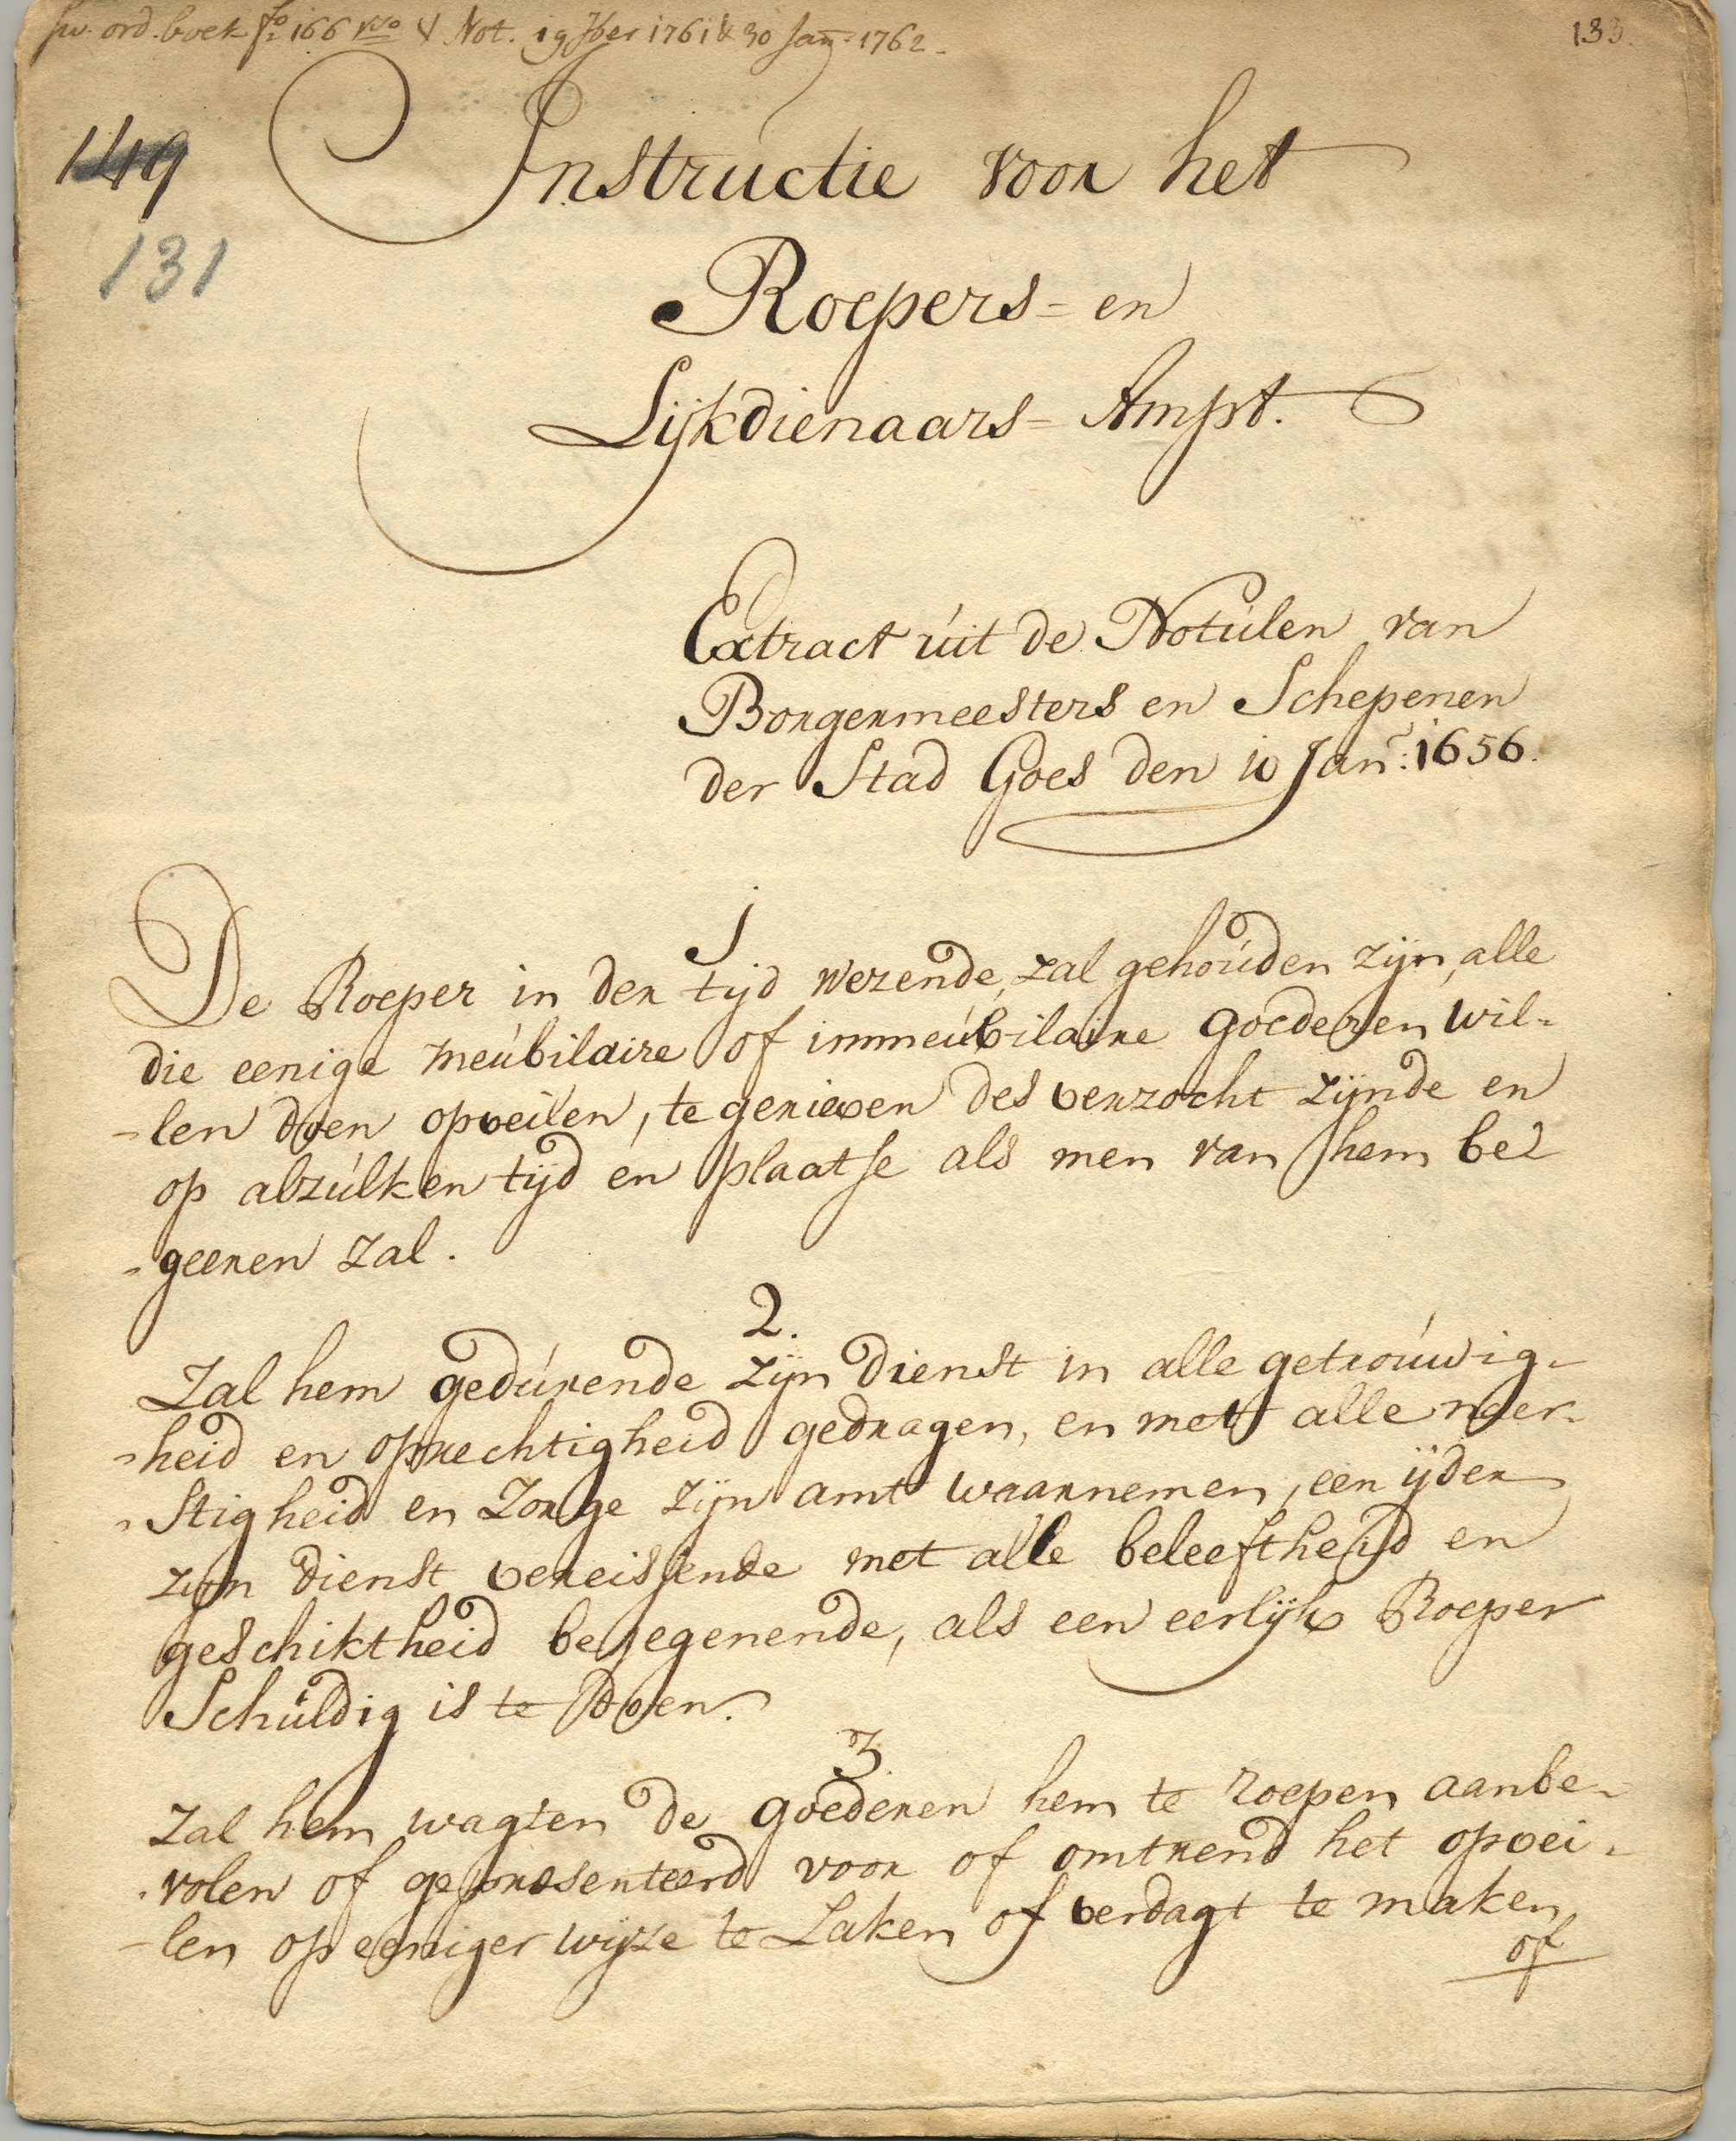 Instructie voor de stadsomroeper en de lijkdienaar, 1656, 1762.